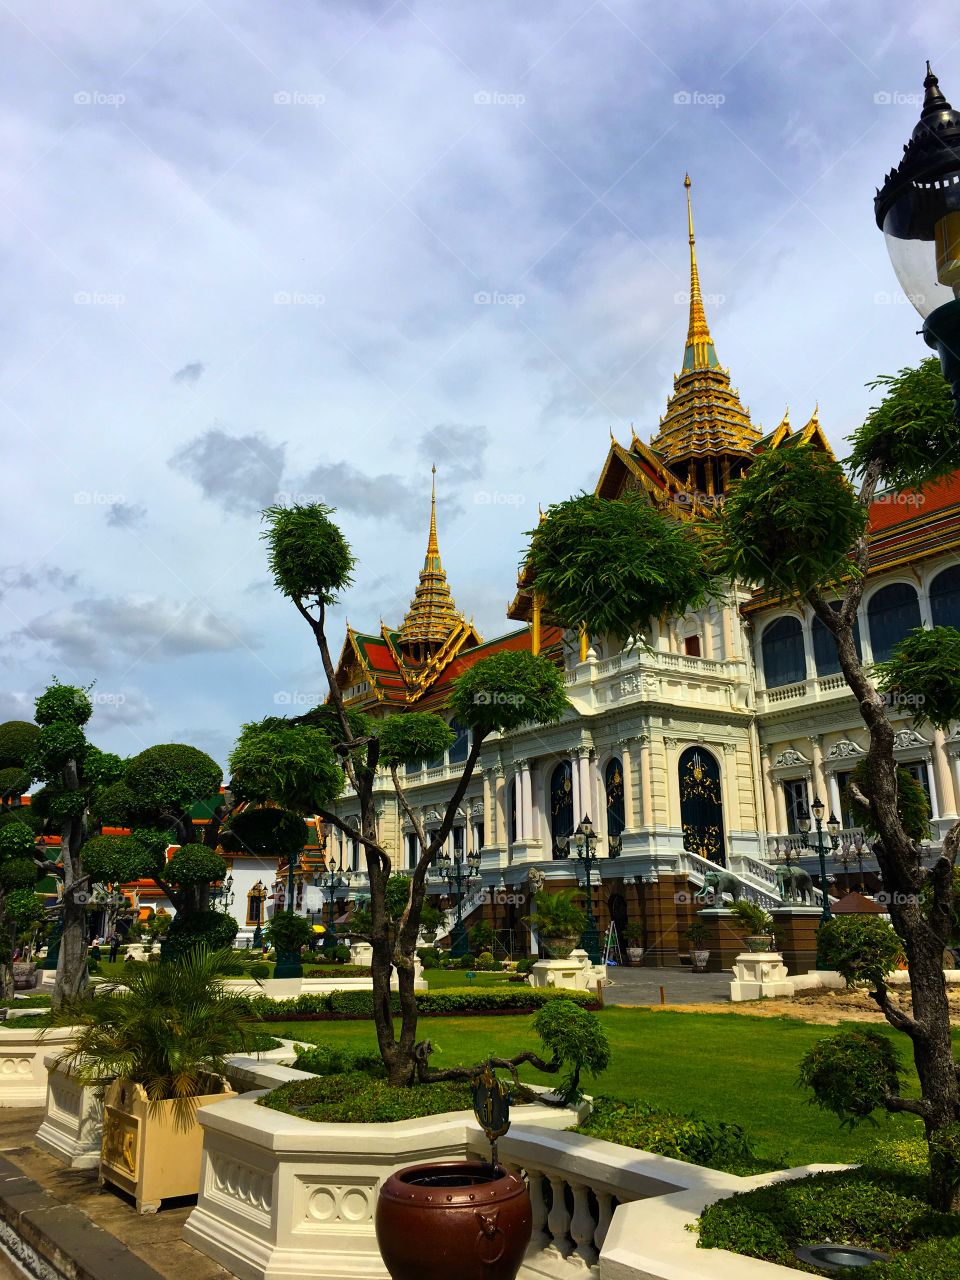 Grand Palace / Bangkok Thailand 89